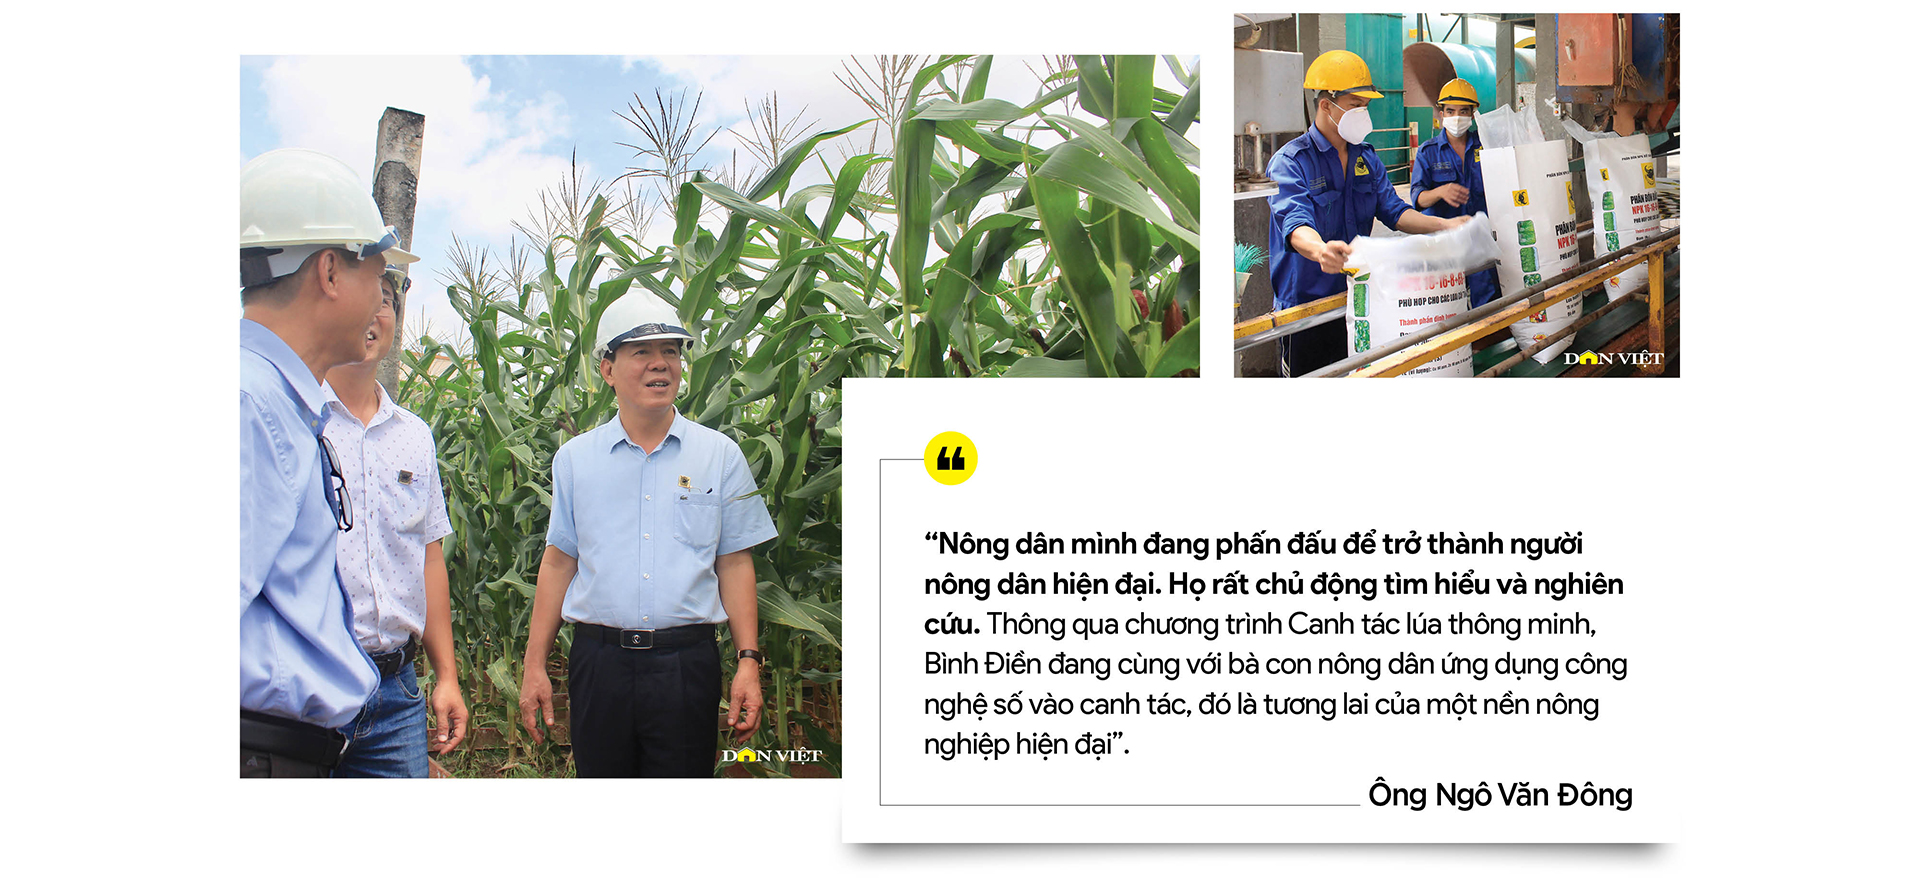 Tổng Giám đốc Bình Điền - ông Ngô Văn Đông: Đặt cho mình sứ mệnh đồng hành và chia sẻ với nông dân - Ảnh 7.